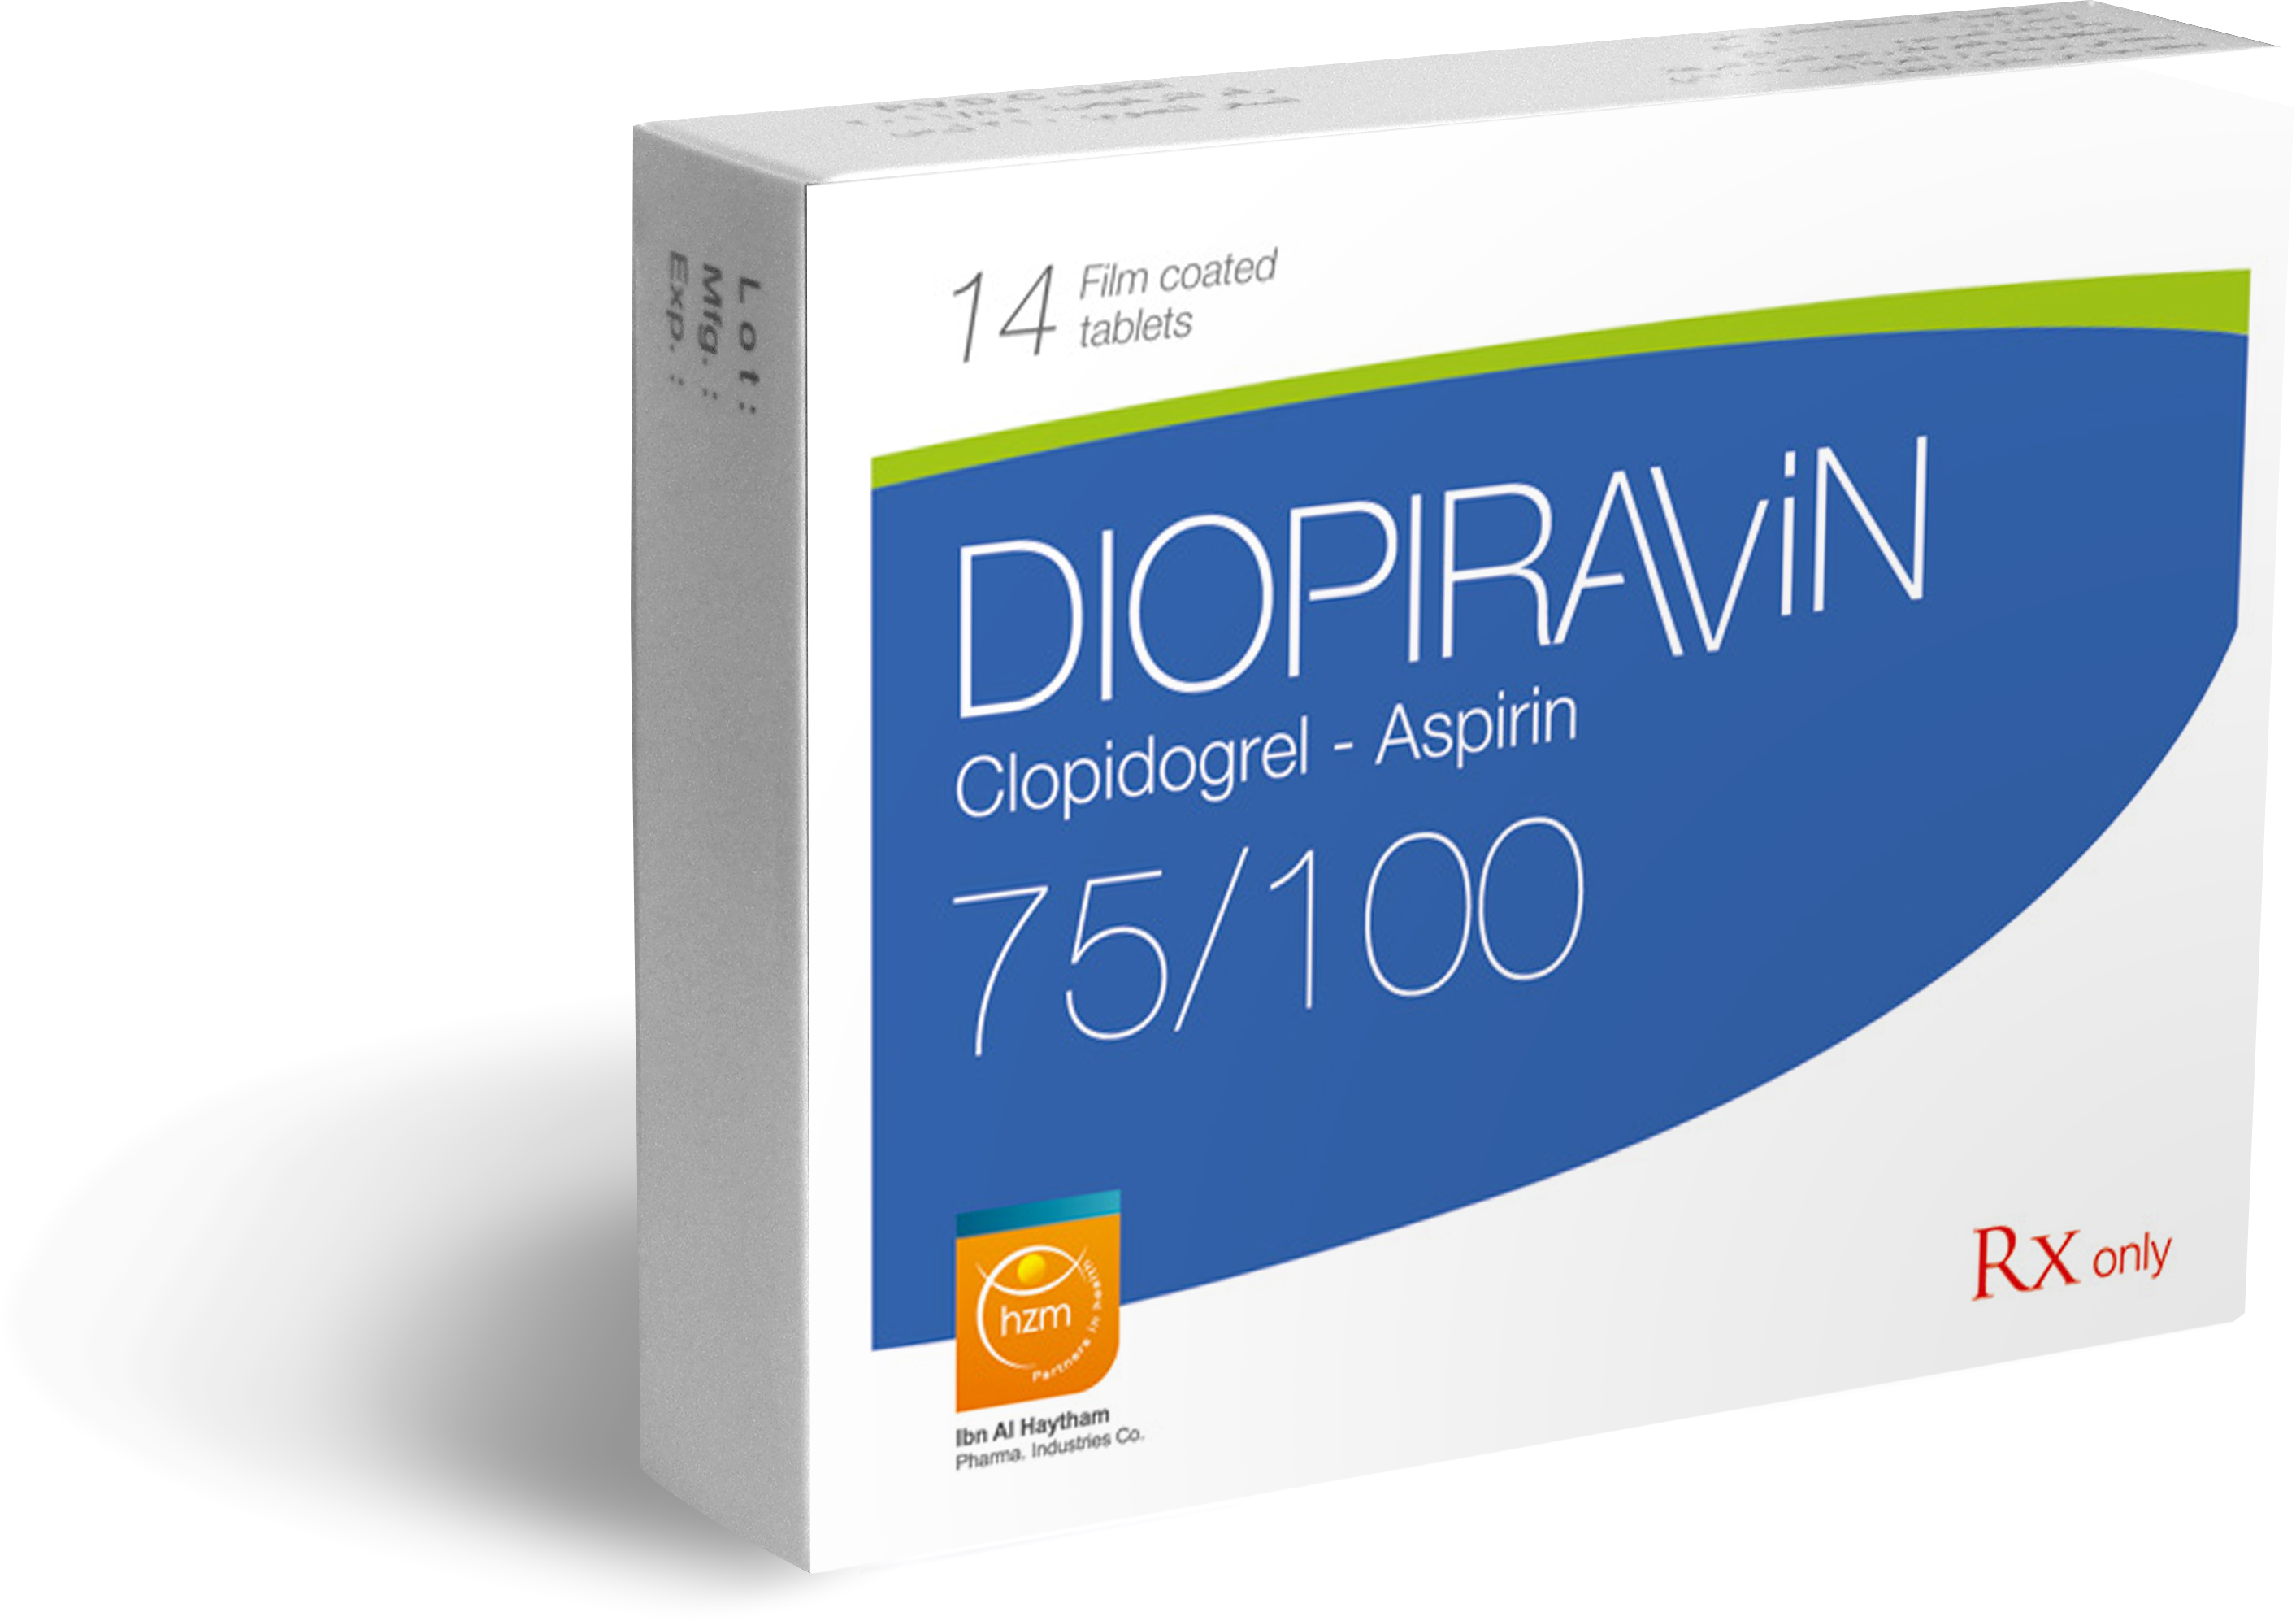 Diopiravin 75/100